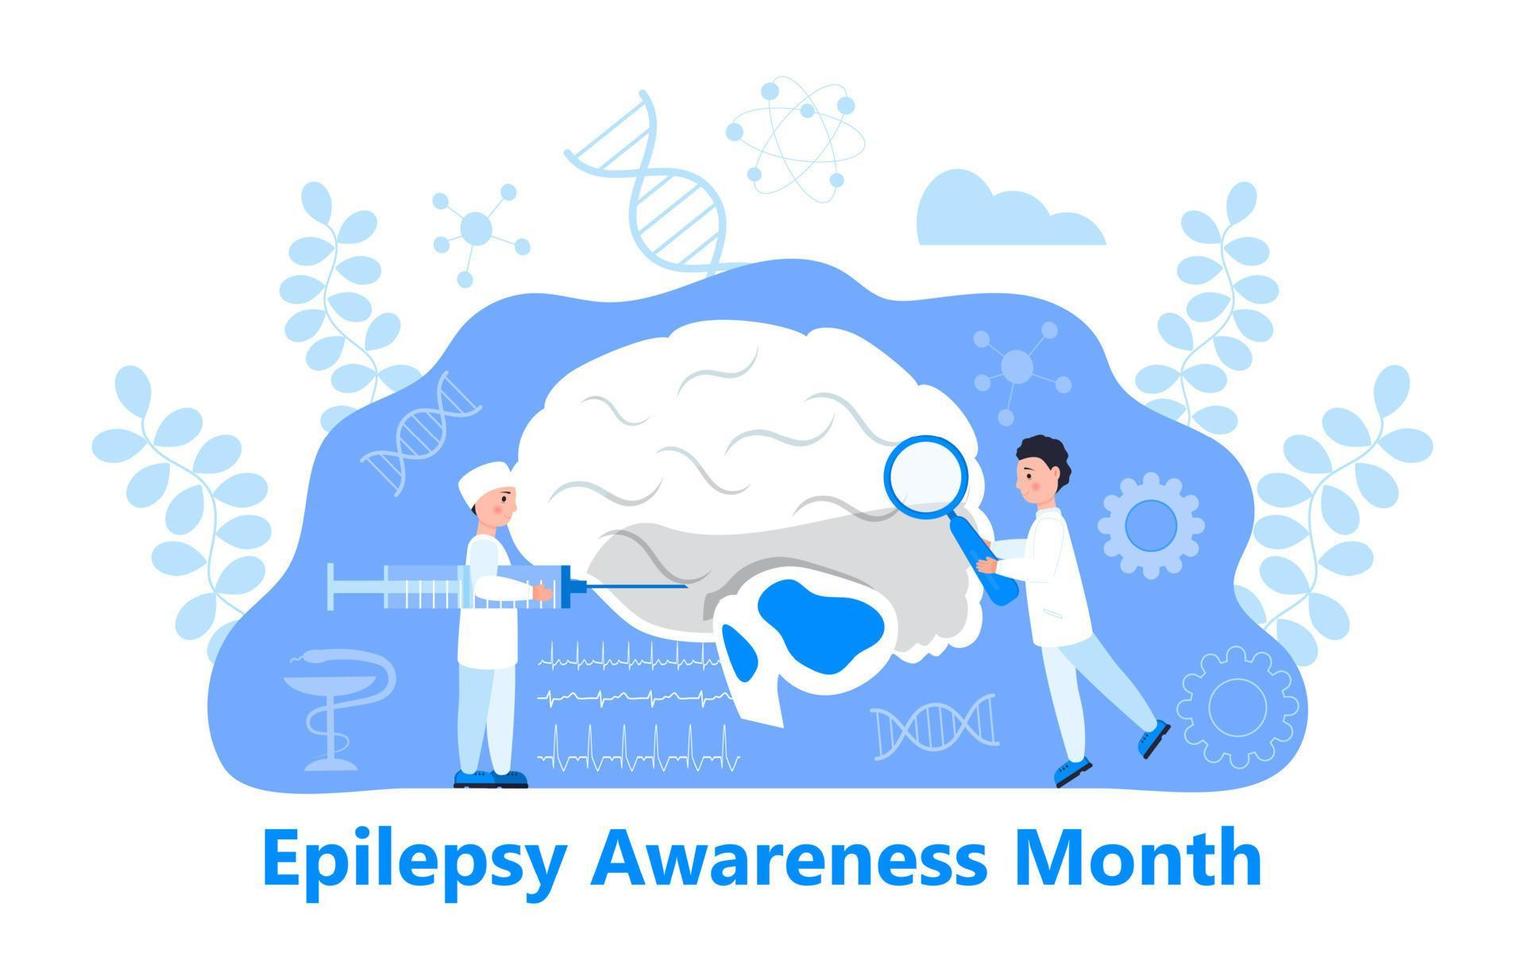 epilepsi medvetenhet månad på november i usa koncept vektor. hjärna, kirurg visas. små läkare behandlar hjärnan. utforskar orsakerna till epilepsi. tecknad koncept vektor för banne